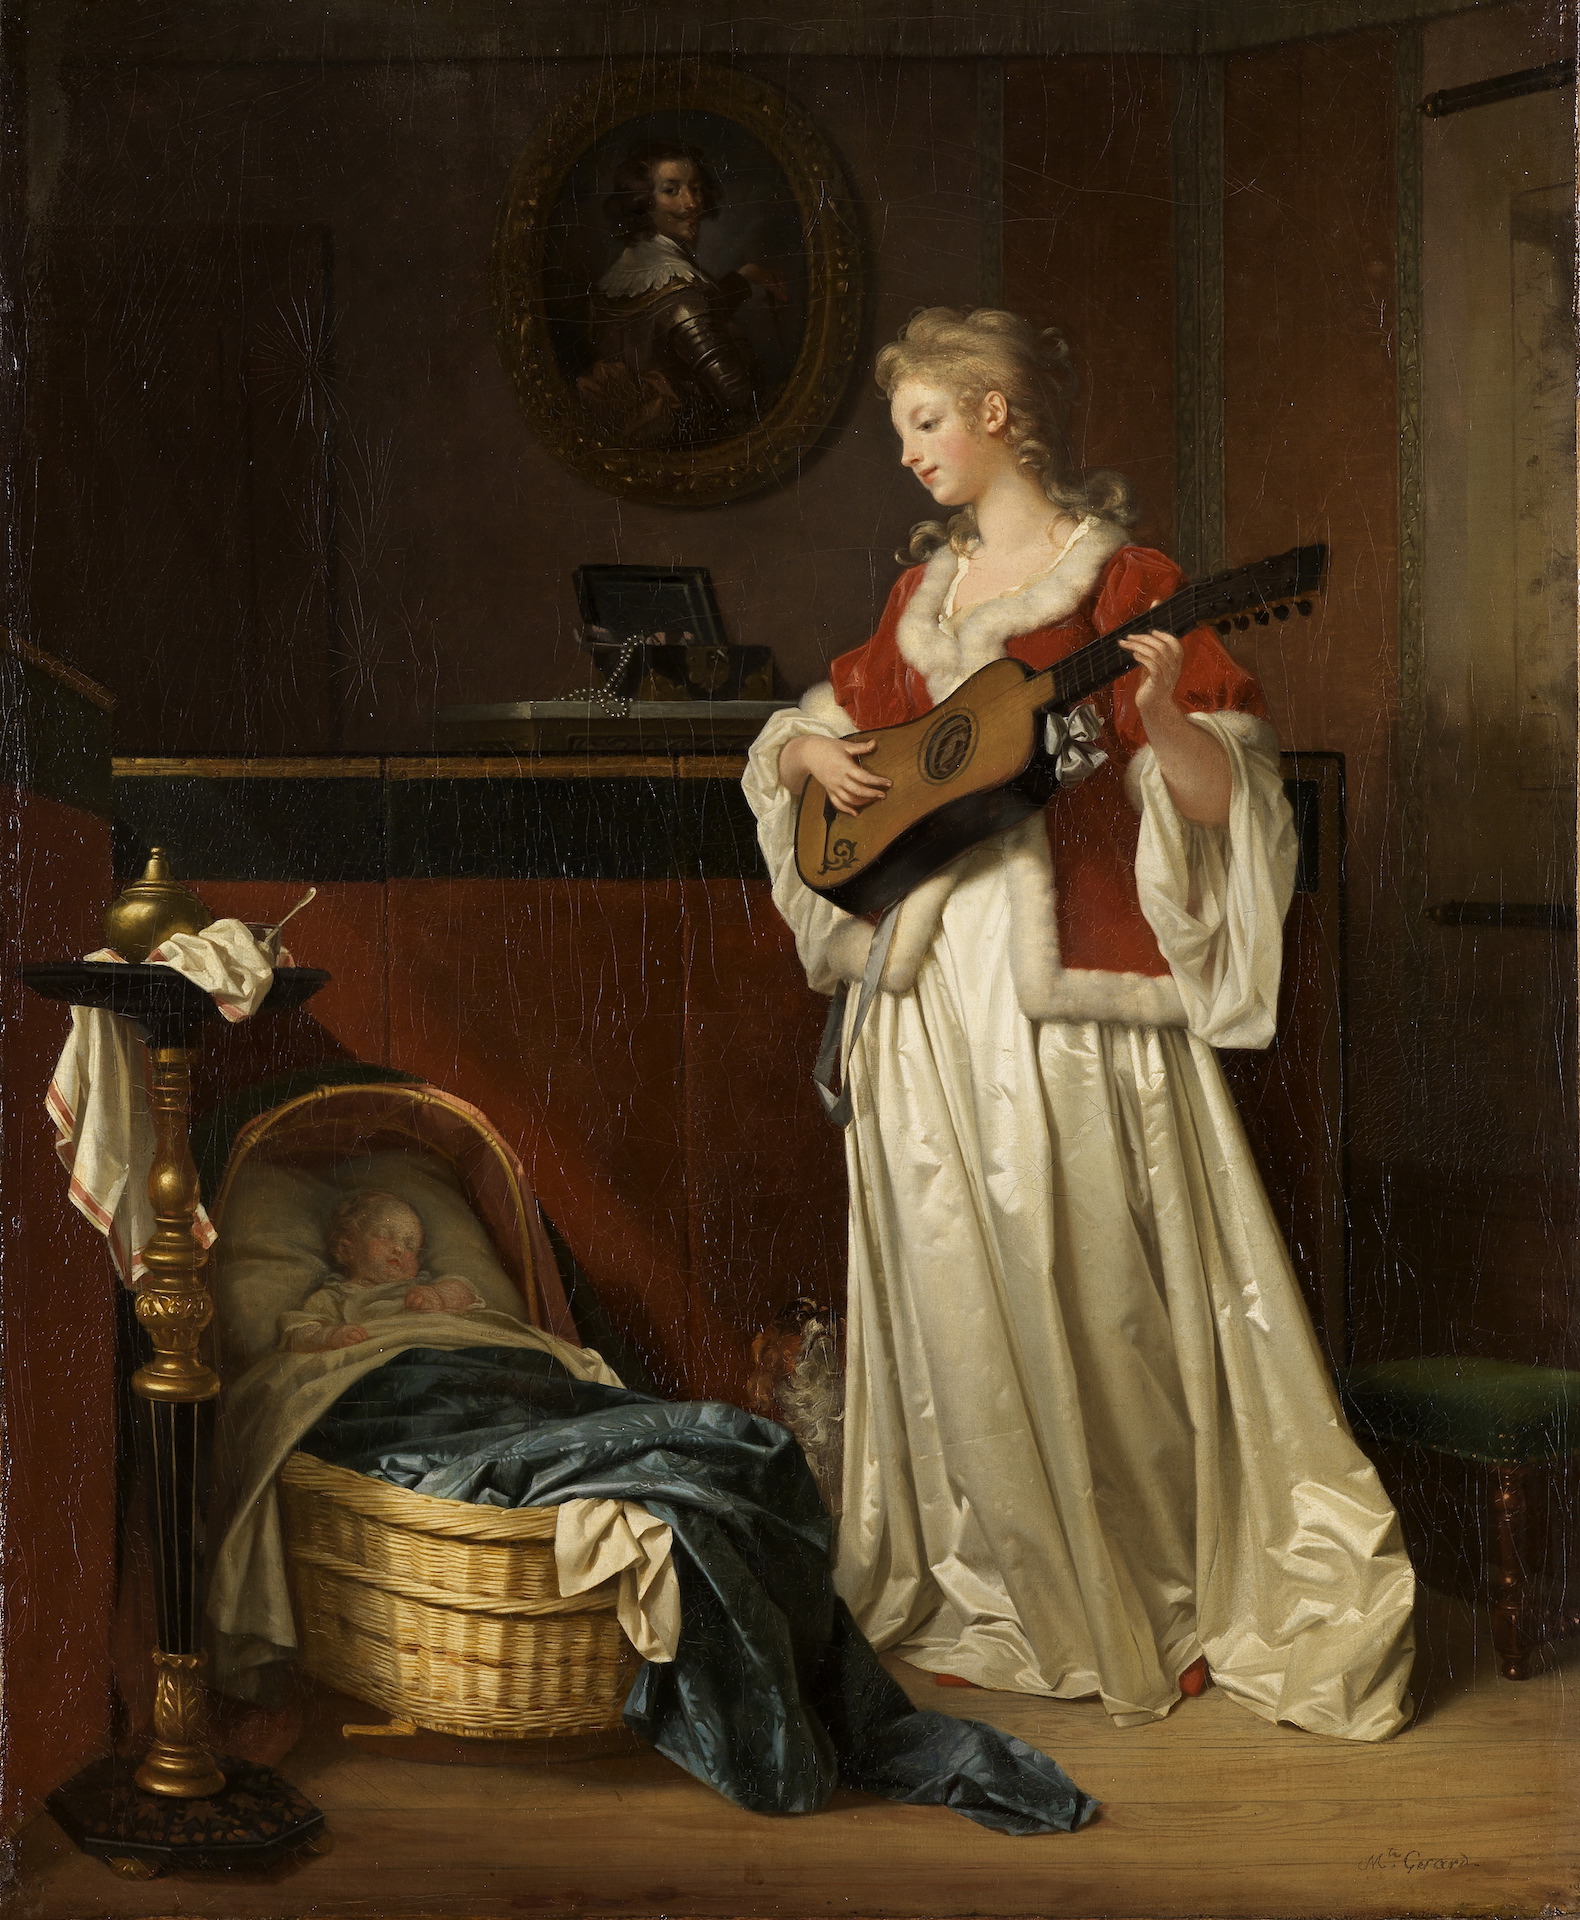 Abbildung des Gemäldes Schlafe mein Kind von Marguerite Gérard.. Es zeigt eine Gitarre spielende Mutter vor einer Wiege mit Kind.